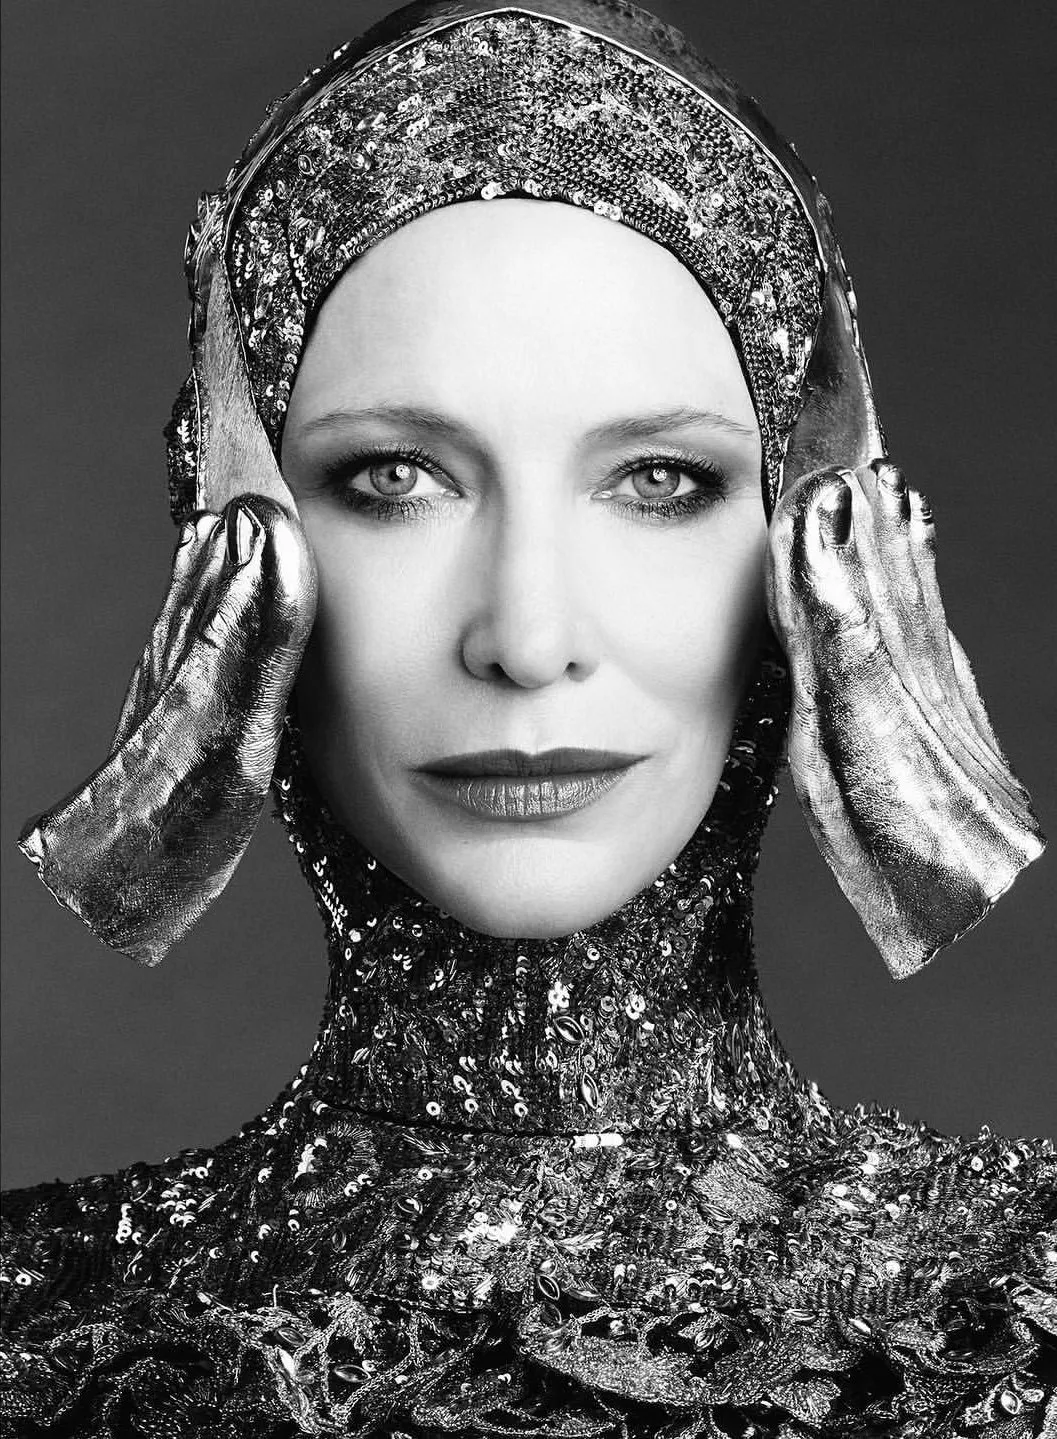 Cate Blanchett, 'Vanity Fair' France/Italy/Spain September issue photo | FMV6